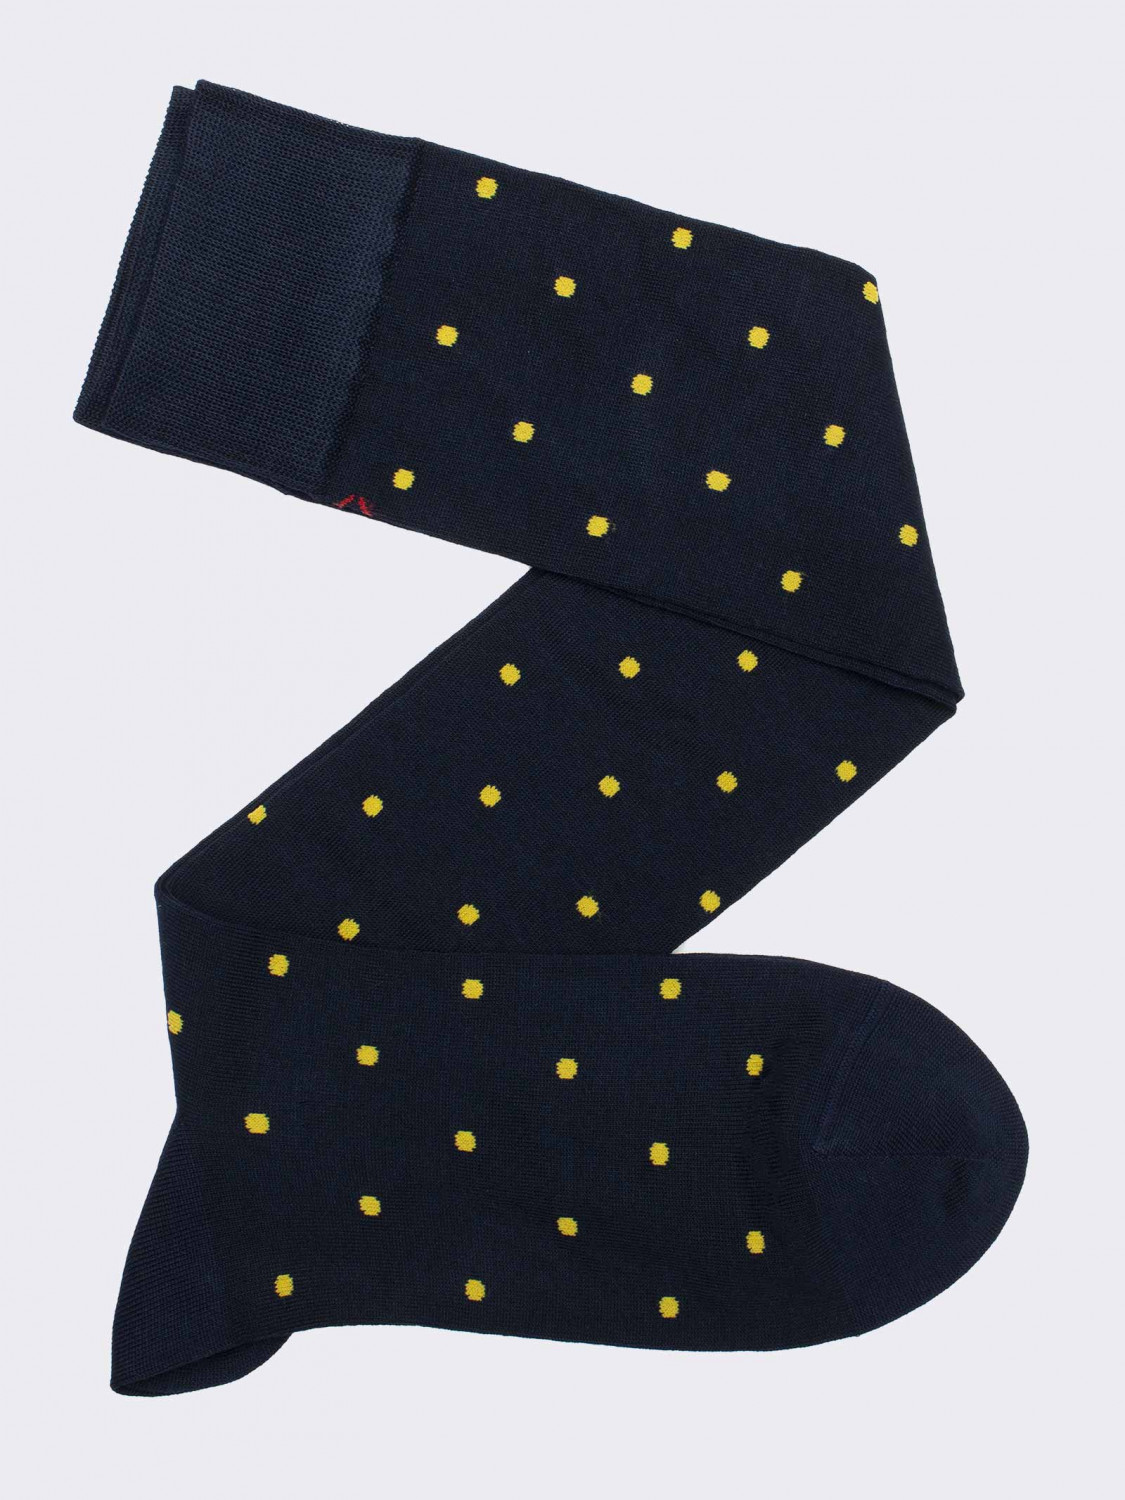 Men's knee-high socks polka dot pattern in fresh Cotton